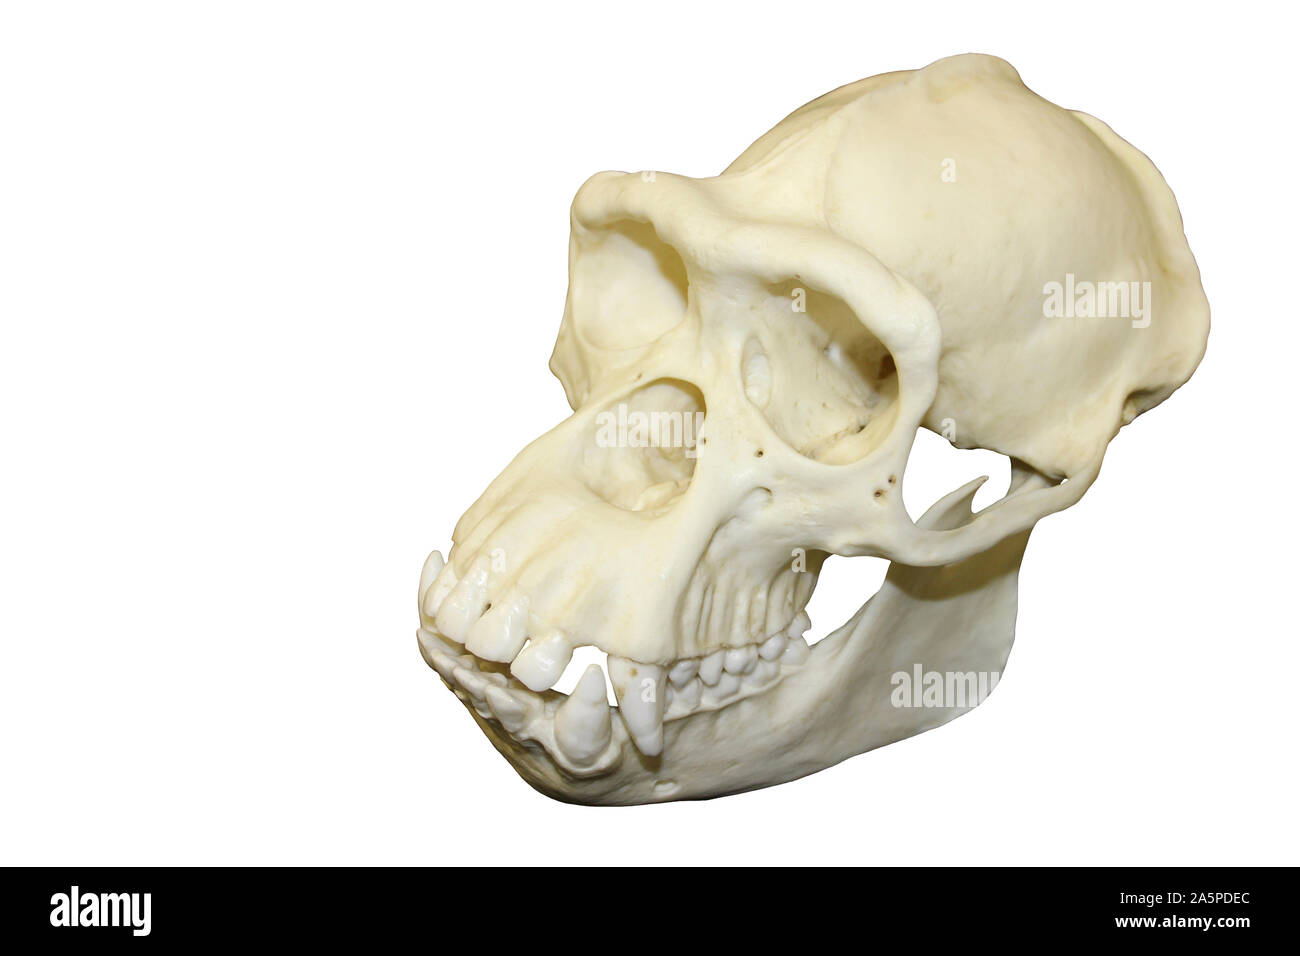 Crâne de chimpanzé mâle Banque D'Images